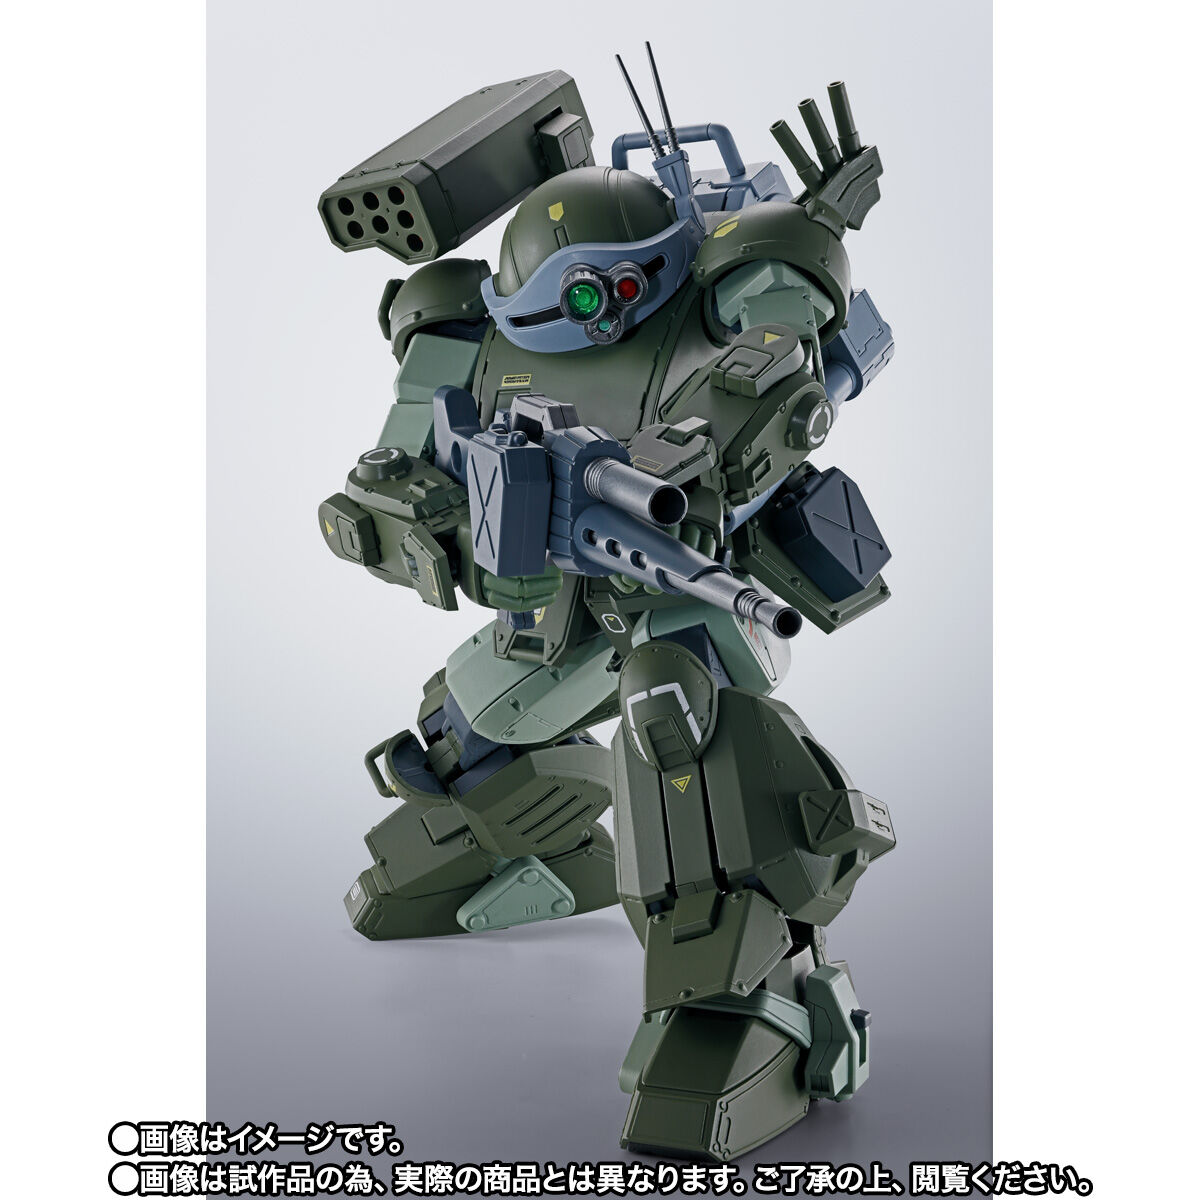 【限定販売】HI-METAL R『スコープドッグ ターボカスタム』装甲騎兵ボトムズ 可動フィギュア-002